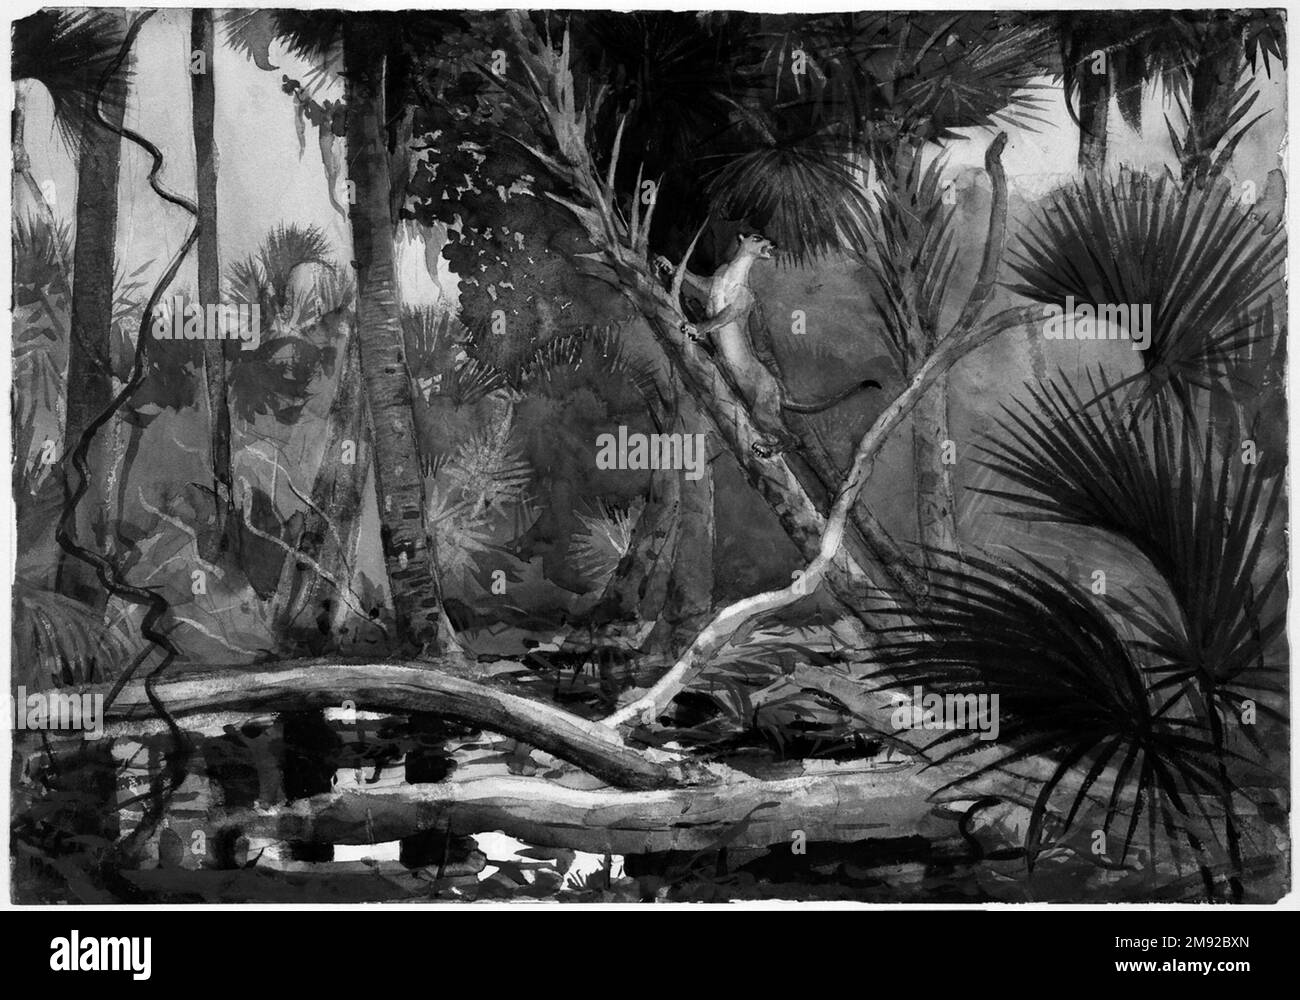 Nella giungla, Florida Winslow Homer (americano, 1836-1910). Nella giungla, Florida, 1904. Acquerello trasparente con tocchi di acquerello opaco su grafite su carta in wove, 13 7/8 x 19 11/16 pollici (35,2 x 50 cm). Un appassionato sportivo, Winslow Homer ha spesso combinato le sue escursioni di caccia e pittura, viaggiando verso destinazioni remote come gli Adirondacks e il Canada in estate e la Florida e le Bermuda in inverno. Questo paesaggio tropicale incarna la sua straordinaria gamma e struttura nel mezzo acquerello. Oltre ai lavaggi a secco e a umido, Homer ha implementato tecniche sperimentali su Foto Stock